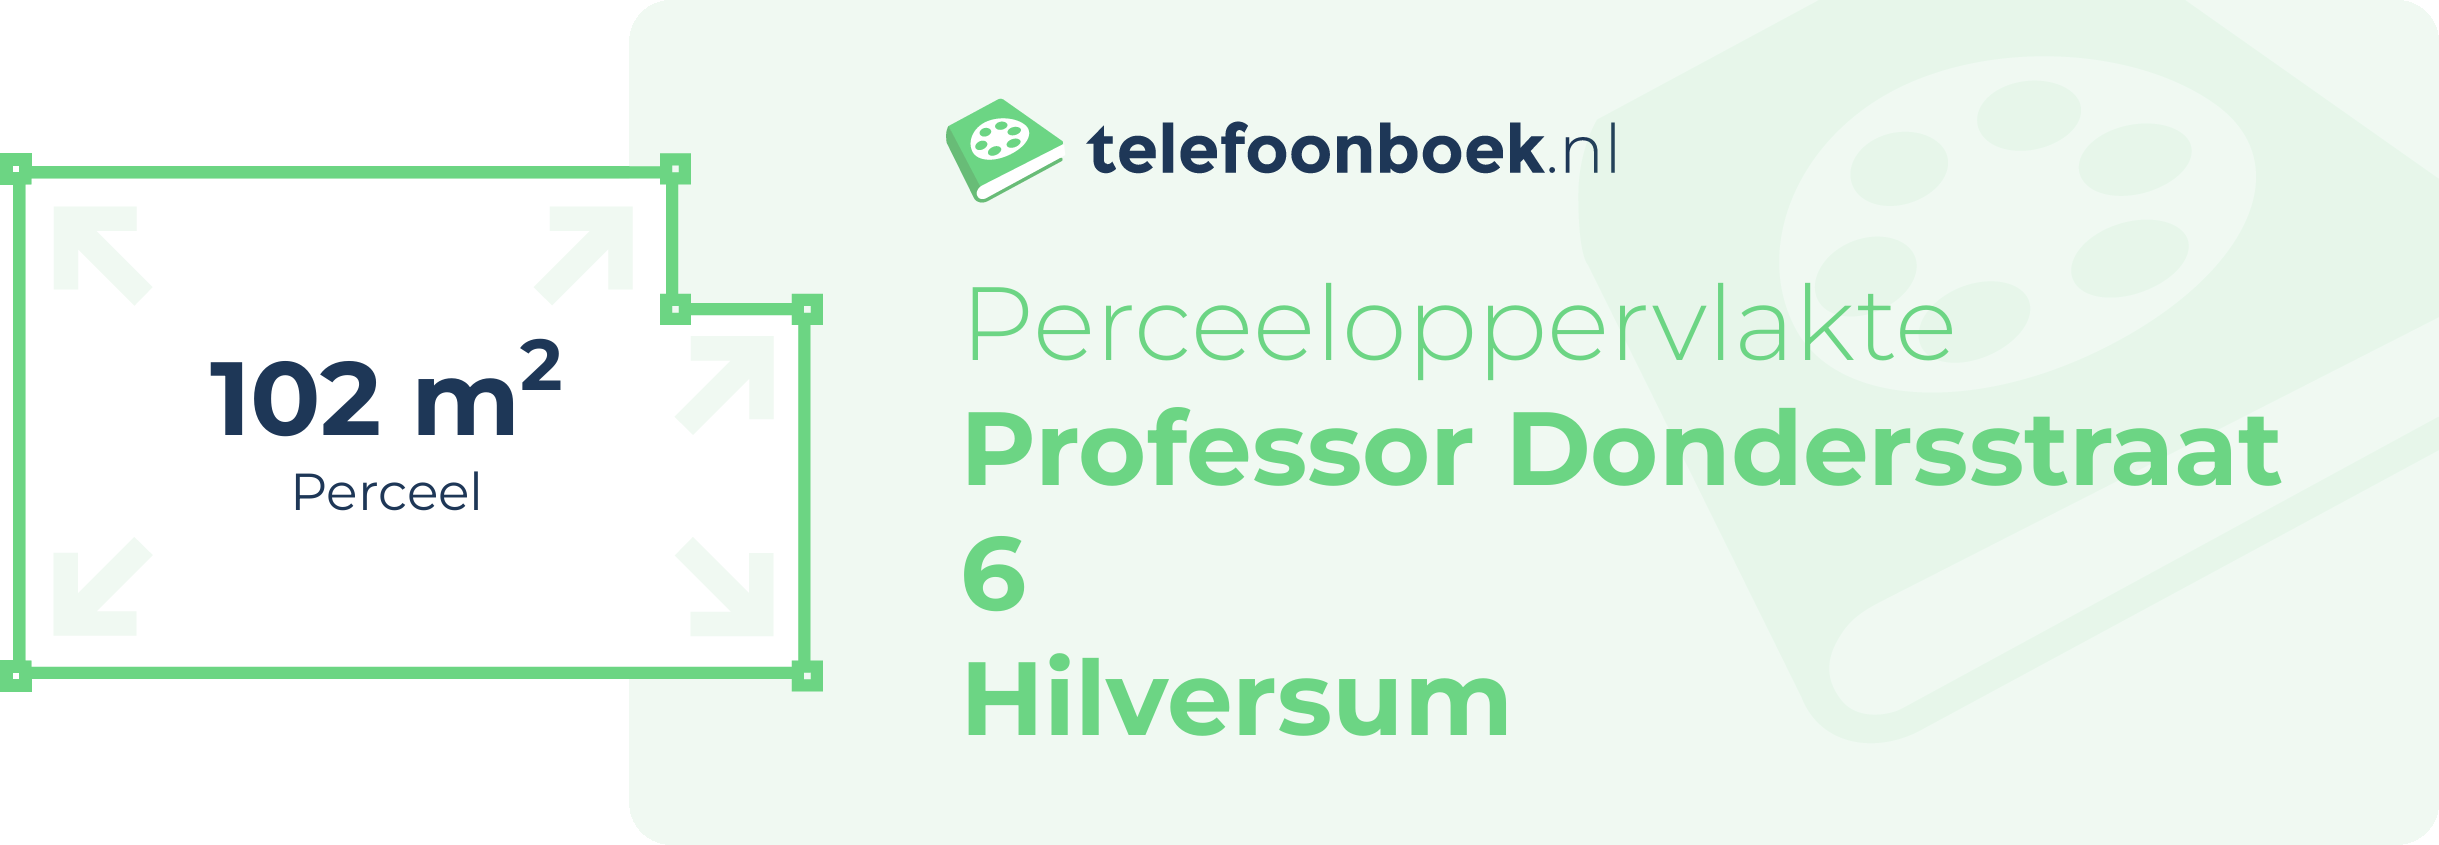 Perceeloppervlakte Professor Dondersstraat 6 Hilversum